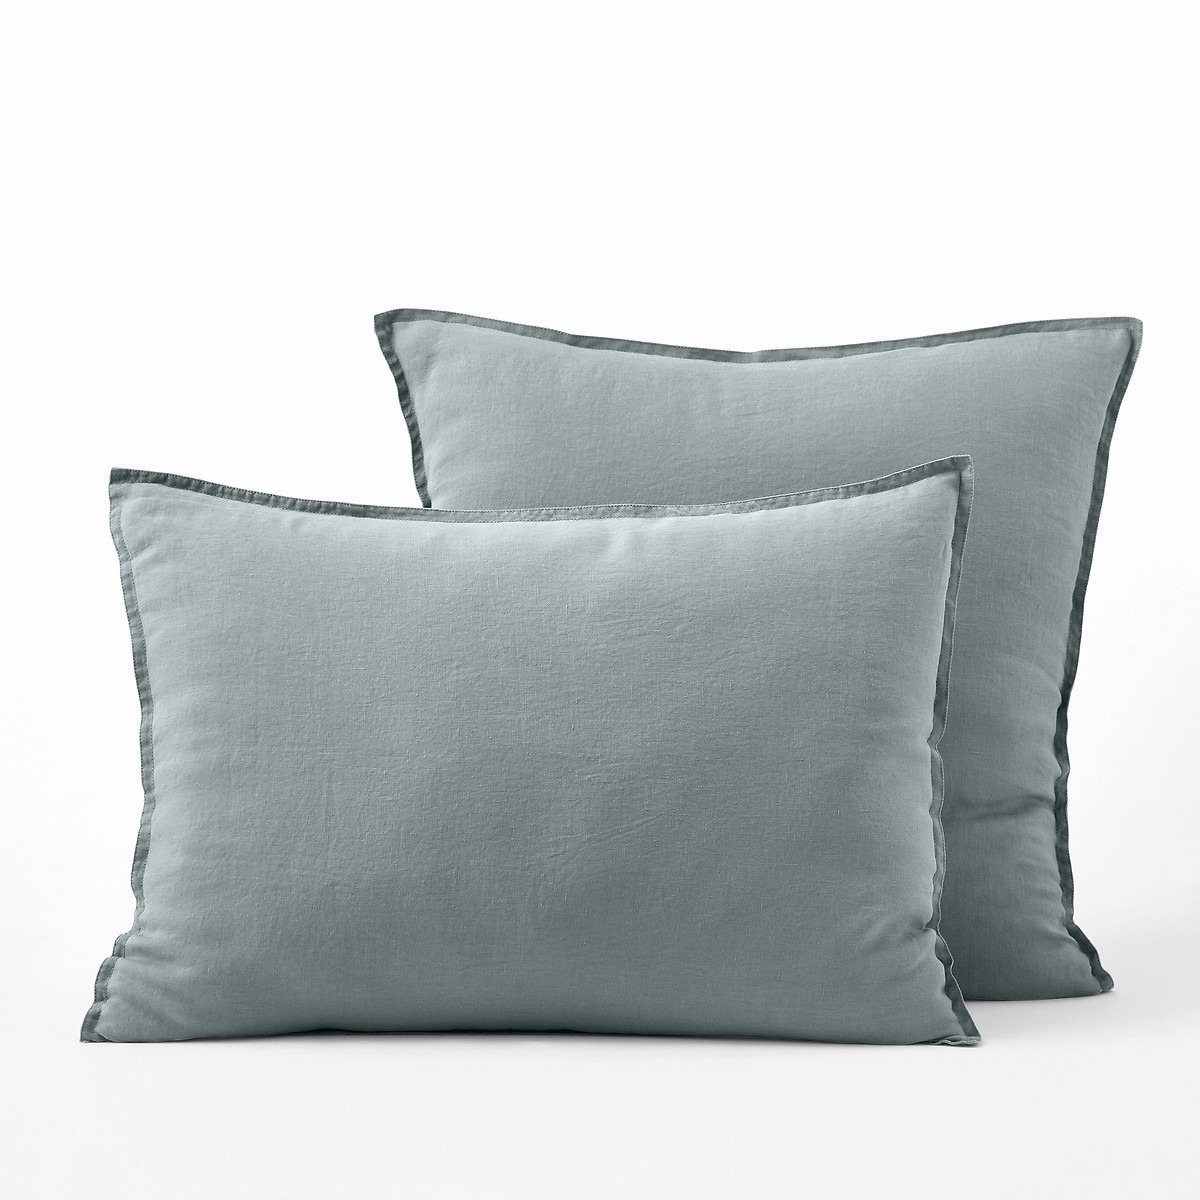 Elina 100% Washed Linen Pillowcase - image 1